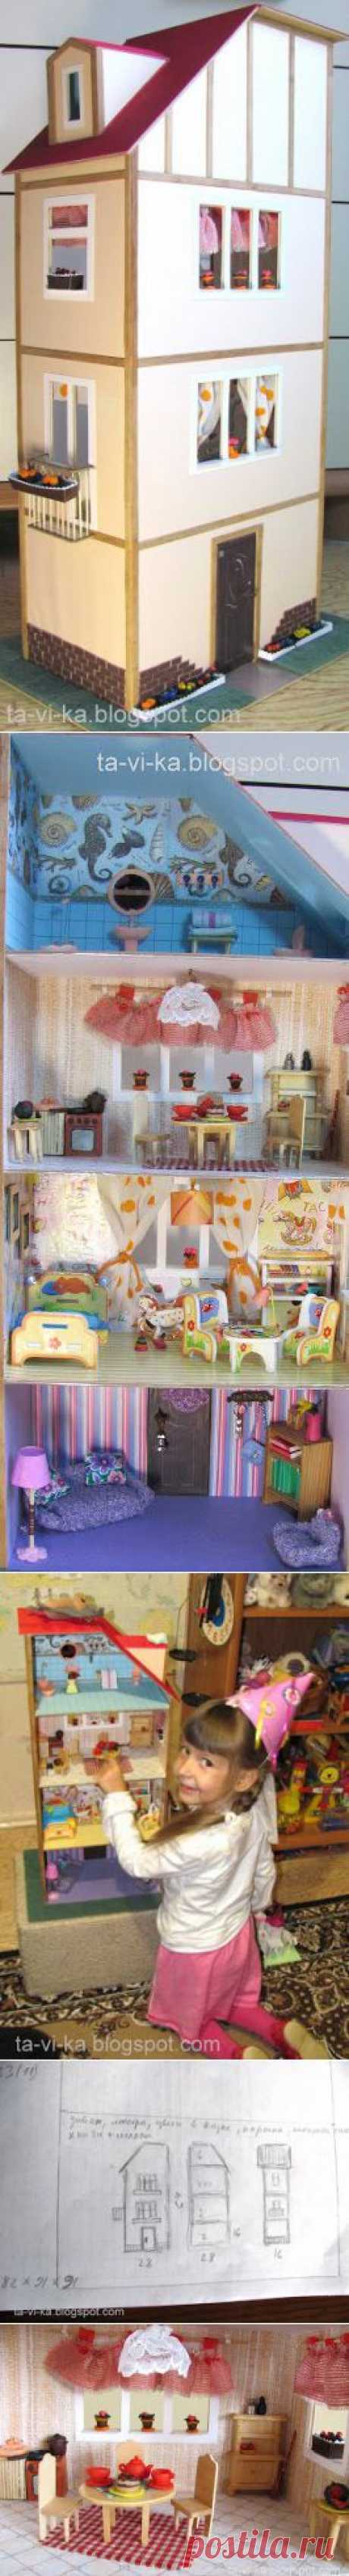 Кукольный домик из ДВП - Как сделать Кукольный домик,кукольную мебель,кукол и кукольную миниатюру.